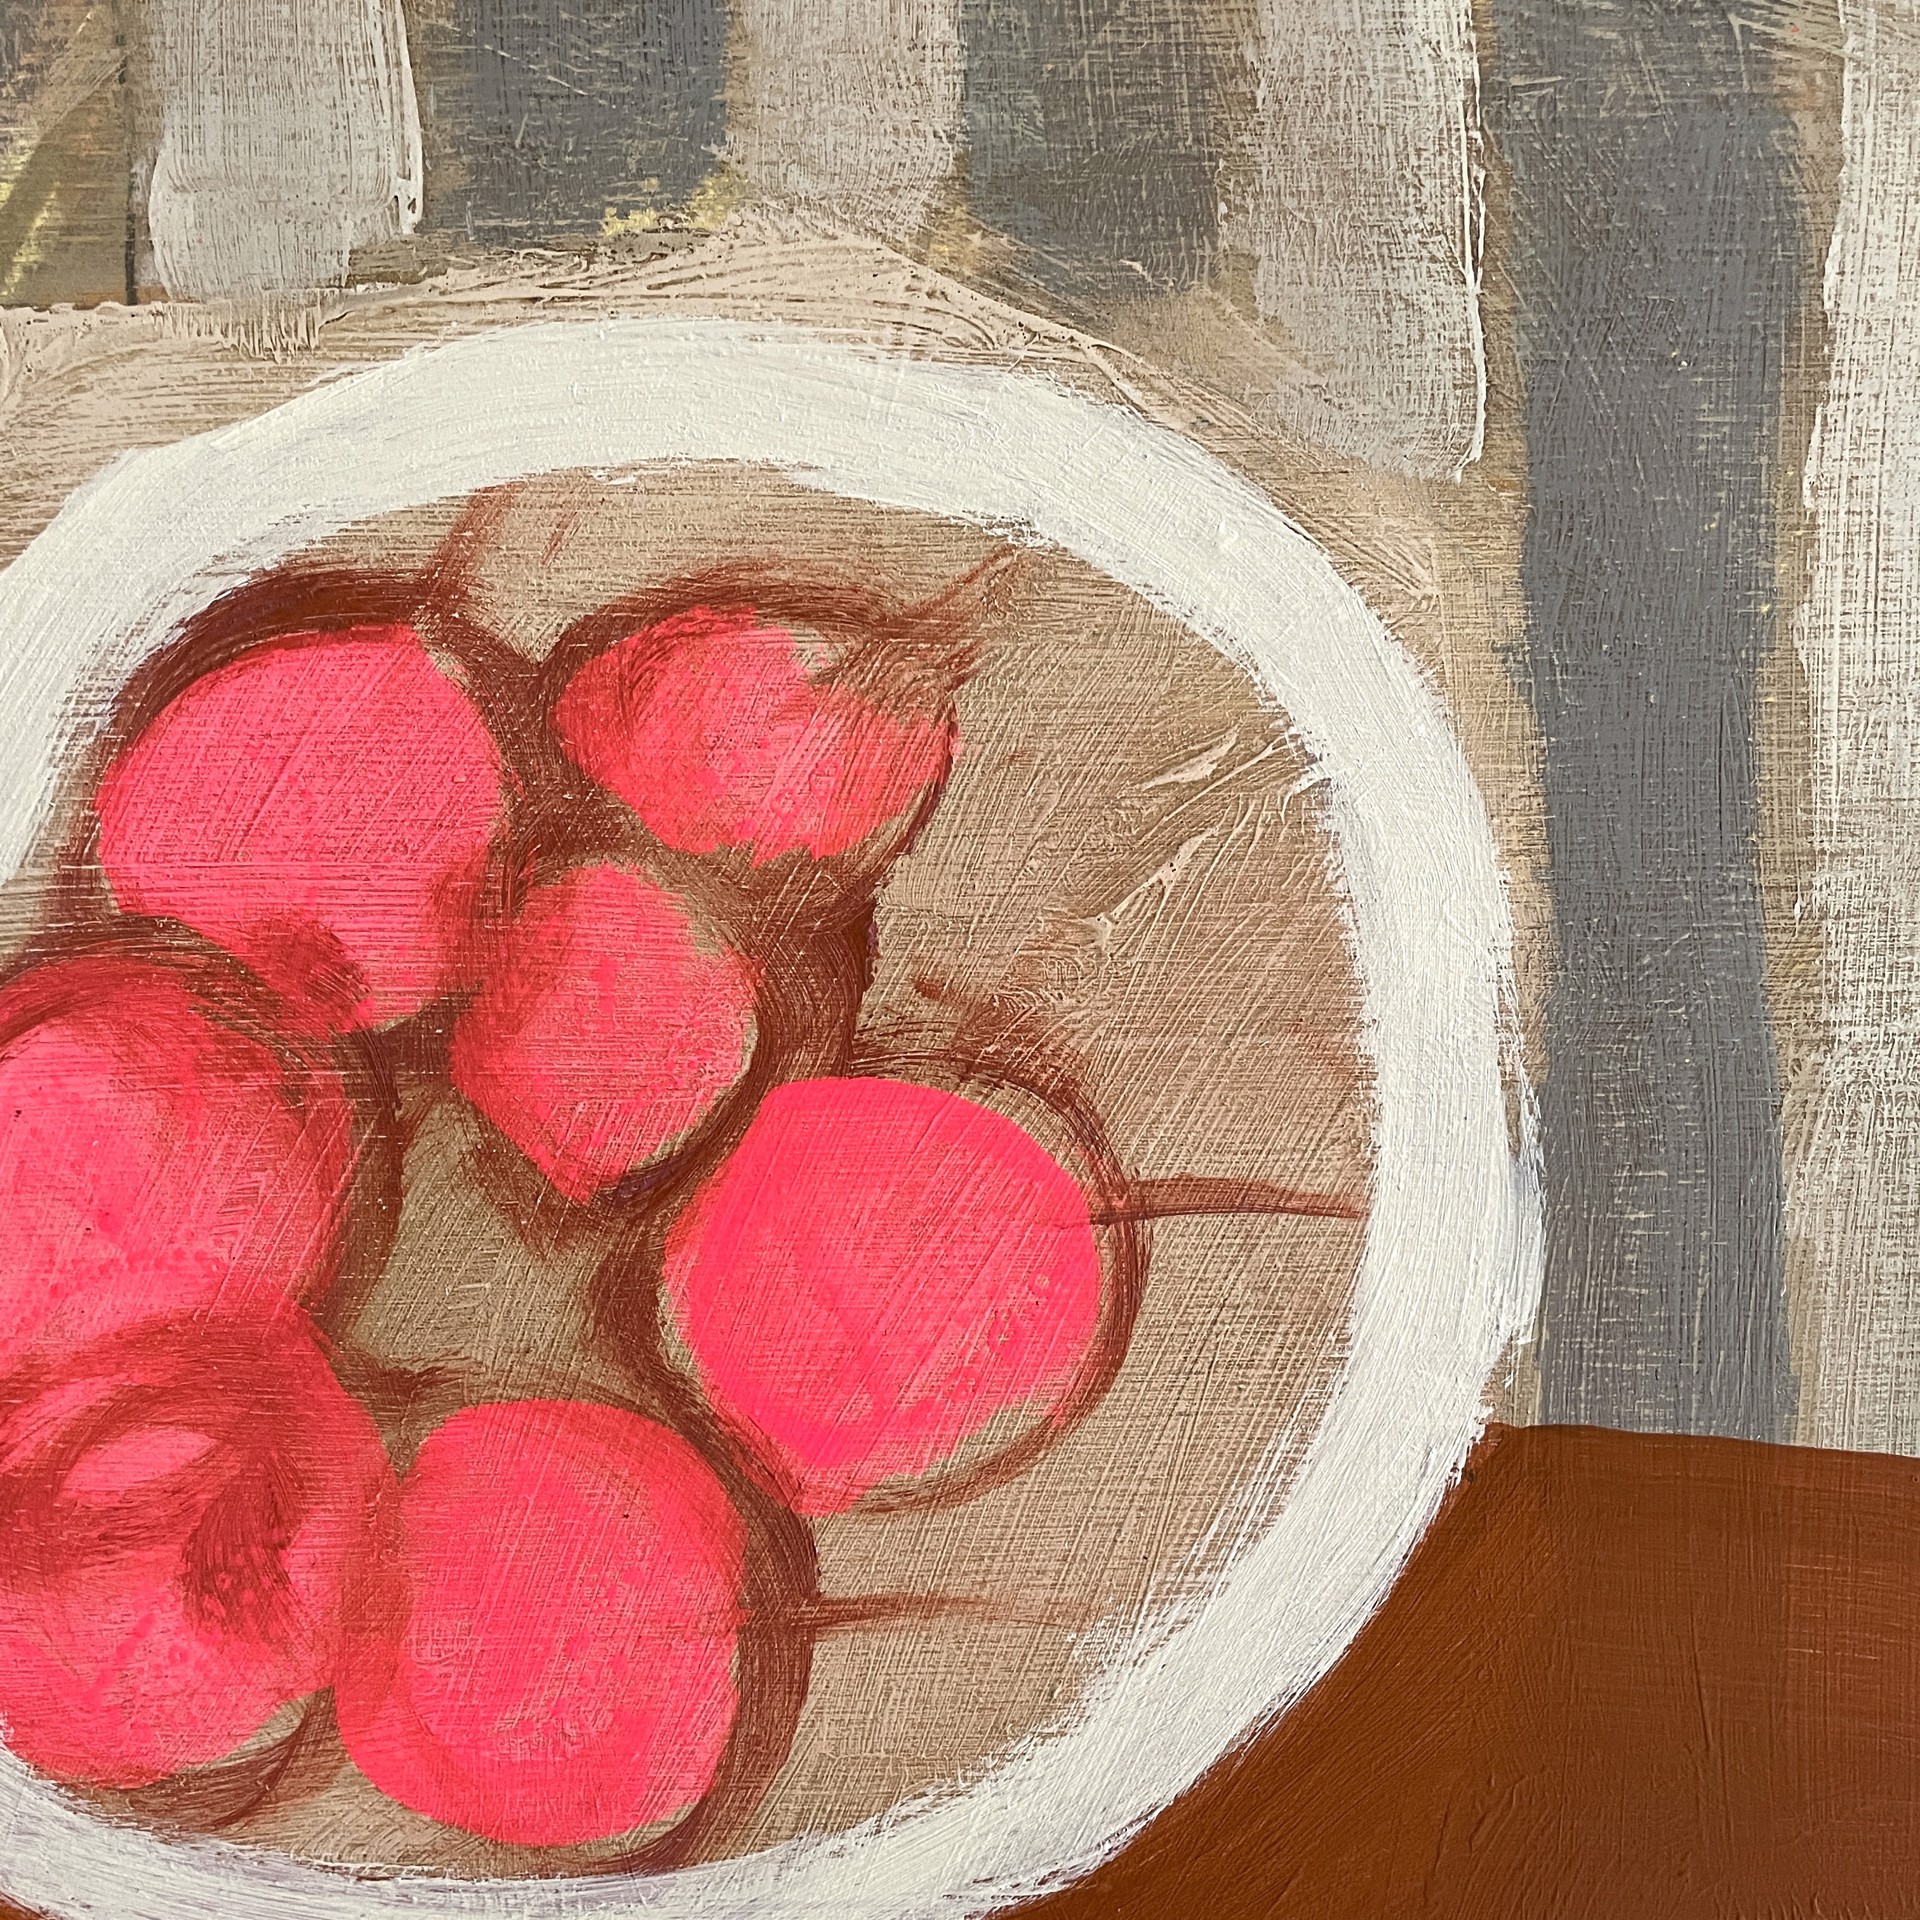 Cherries and Bittersweet on Table by Rachael Van Dyke